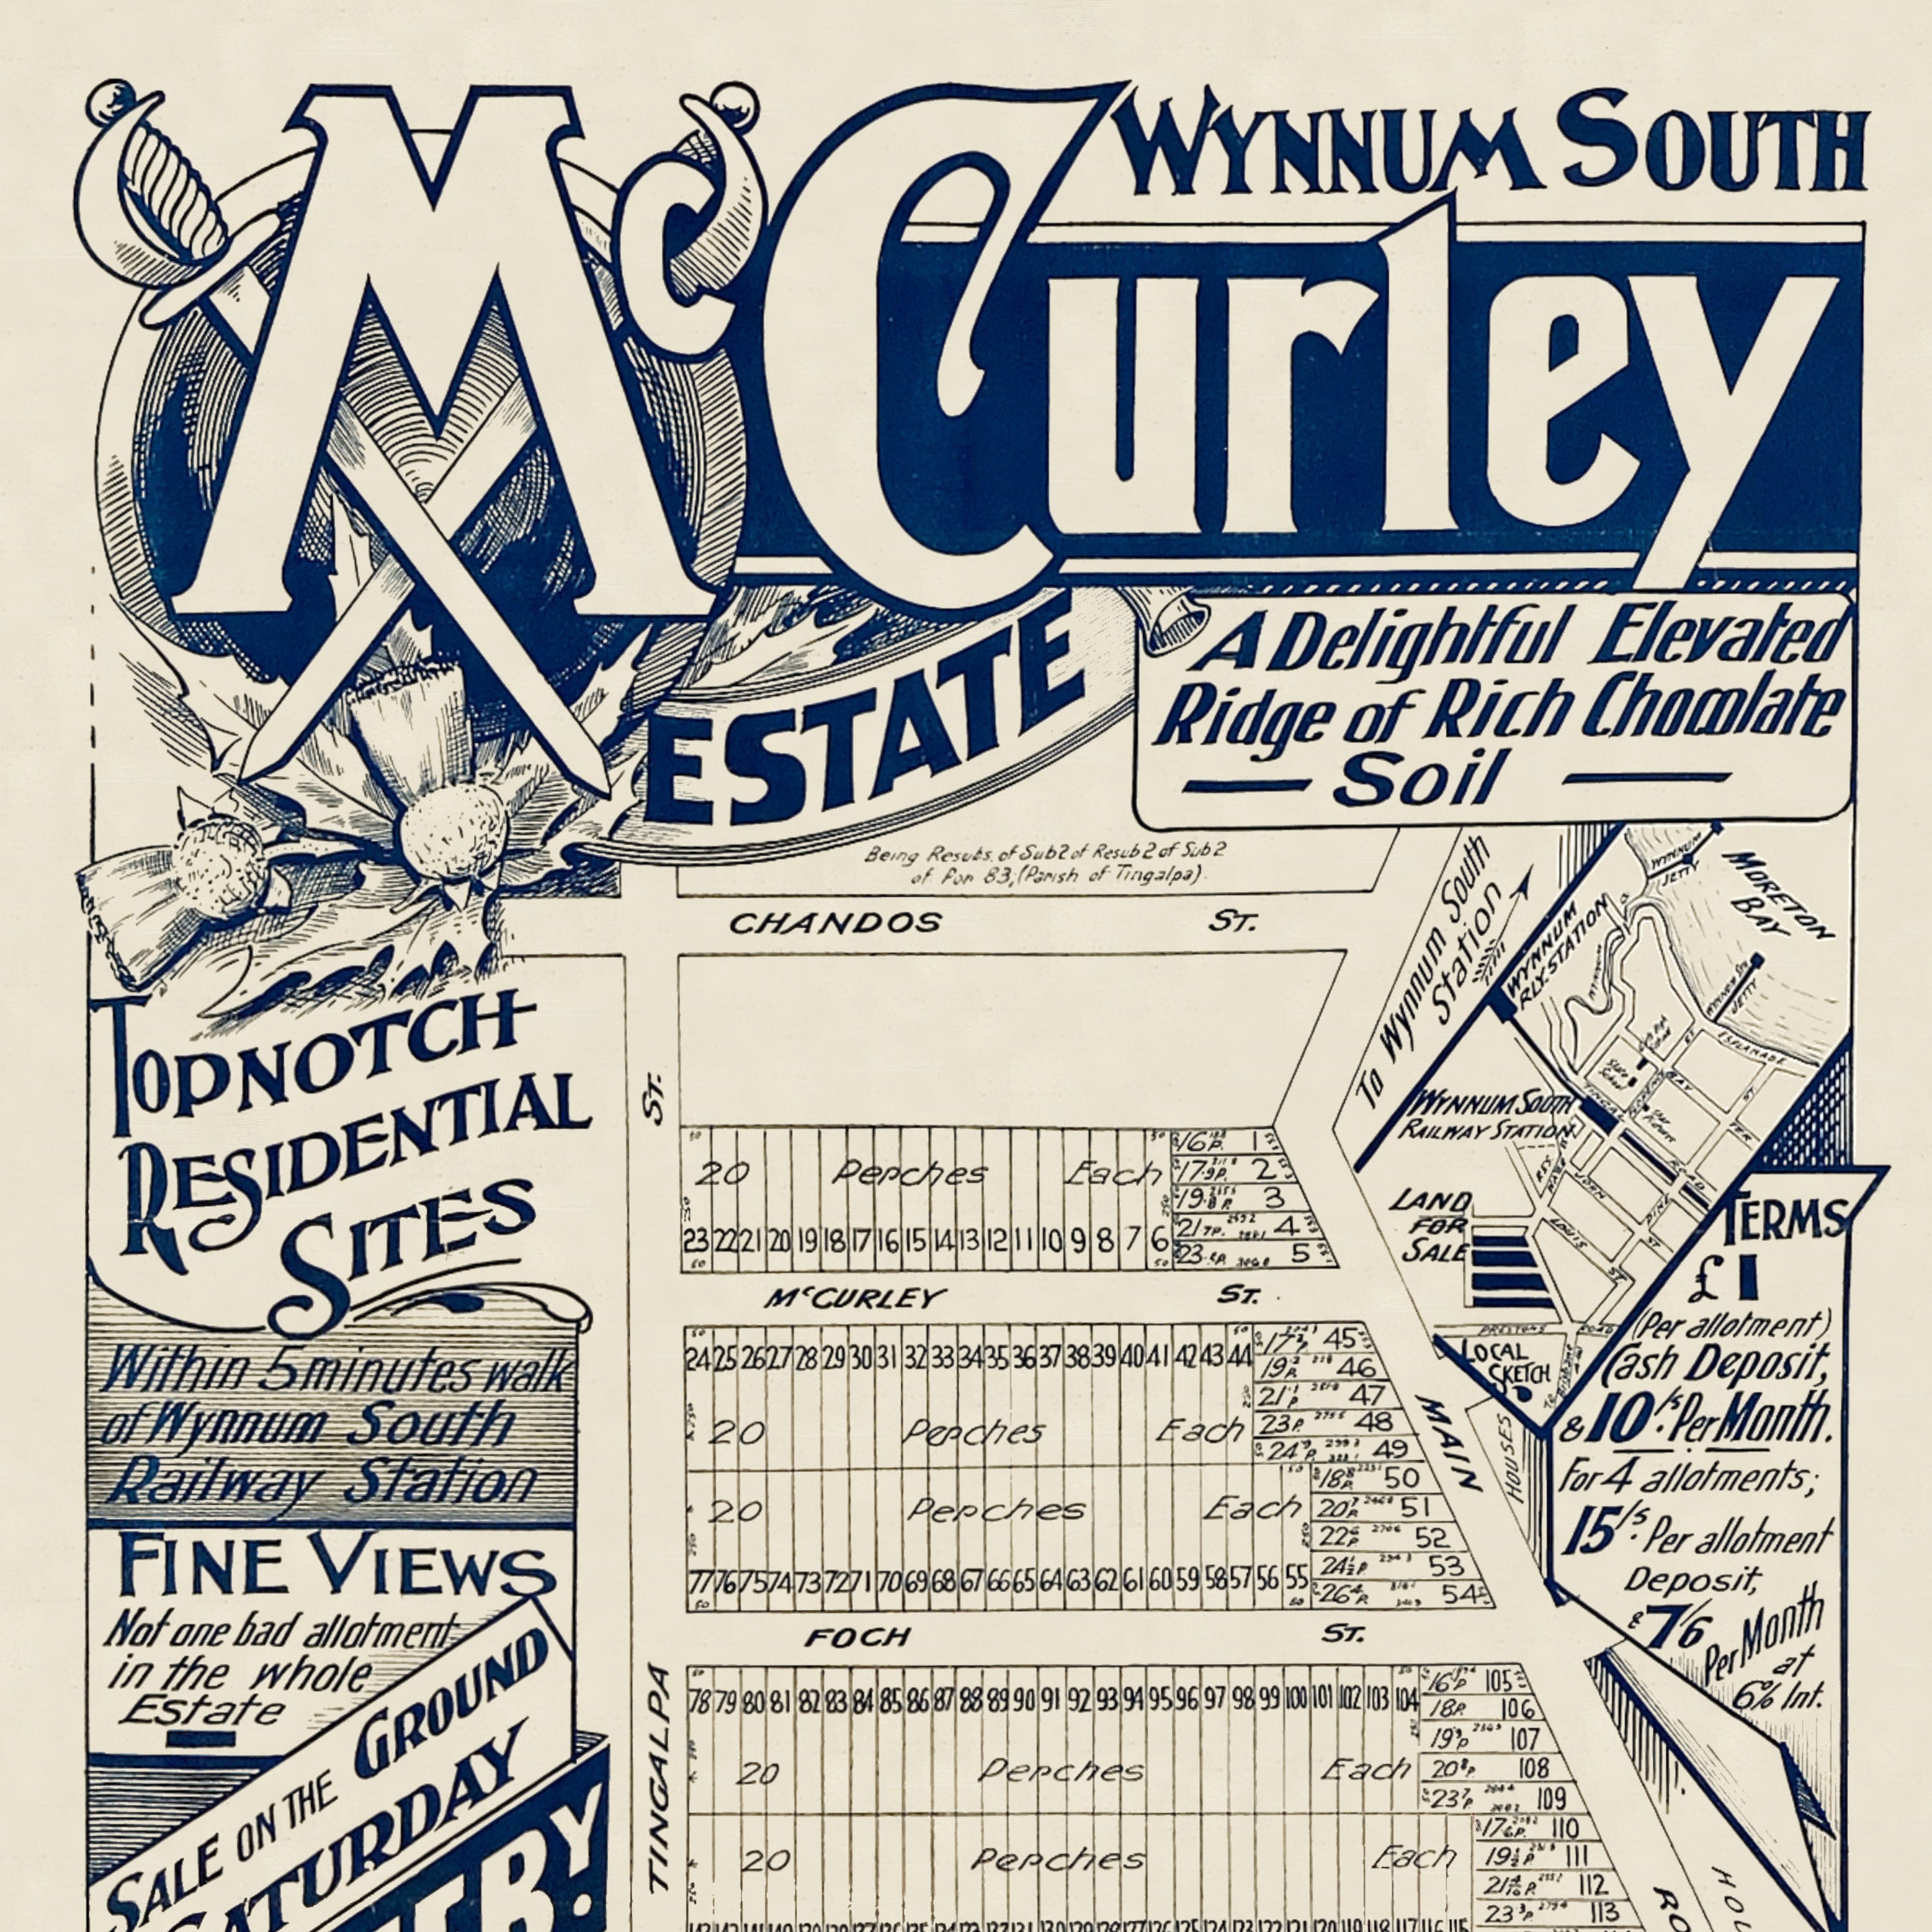 1919 Wynnum West - McCurley Estate